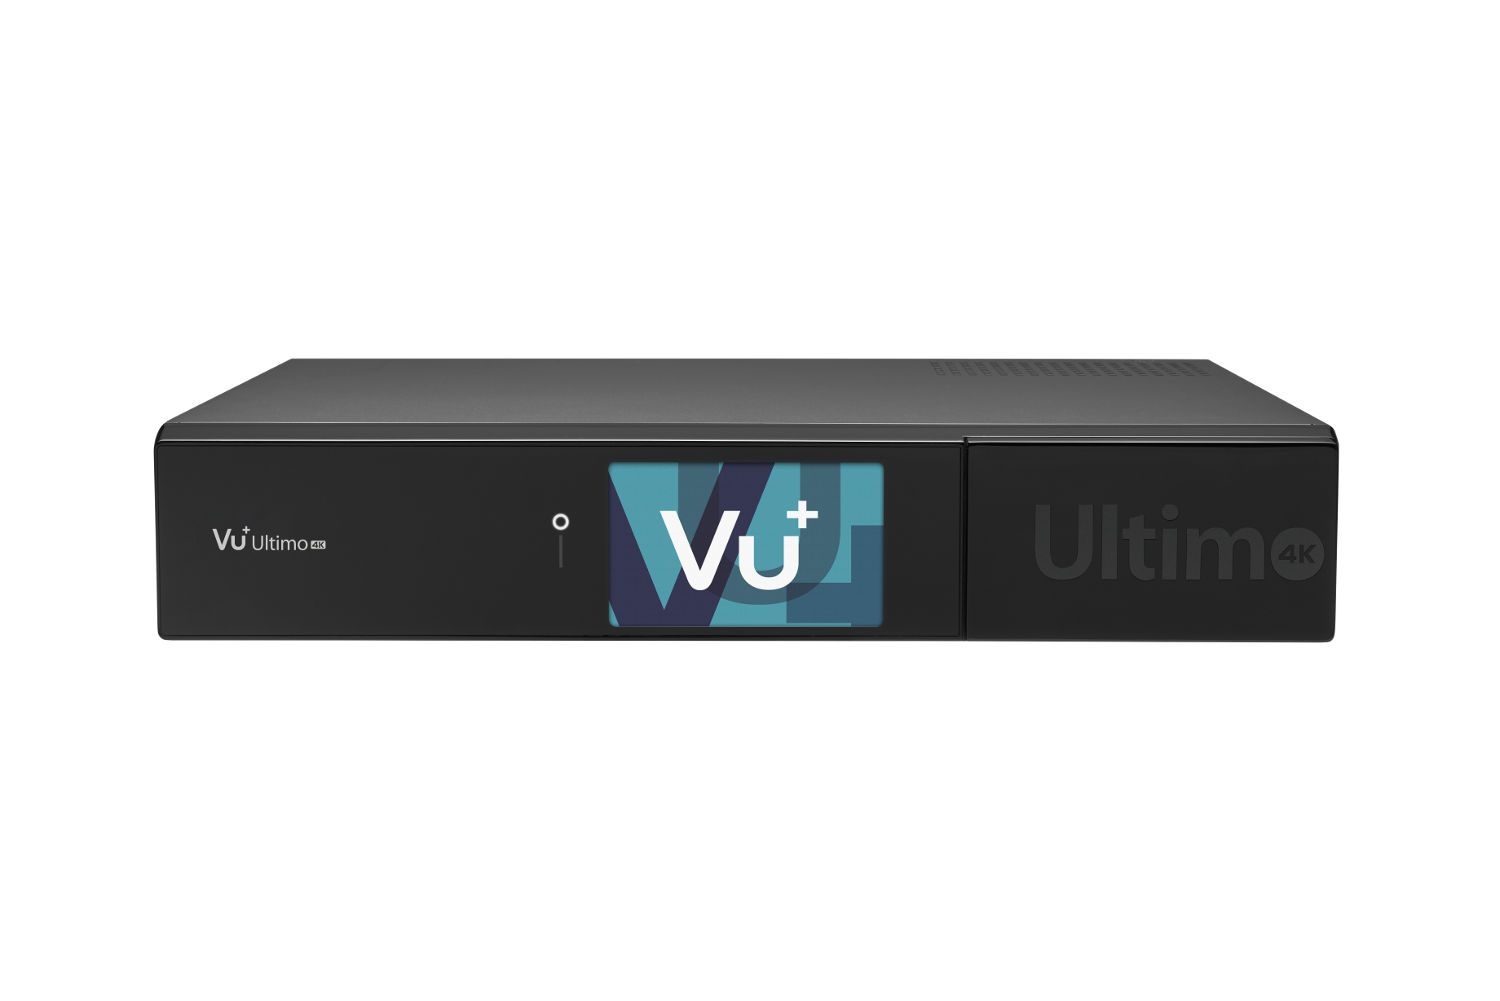 VU+ Ultimo 4K 2x DVB-C FBC Tuner 3 TB HDD Linux Receiver UHD 2160p